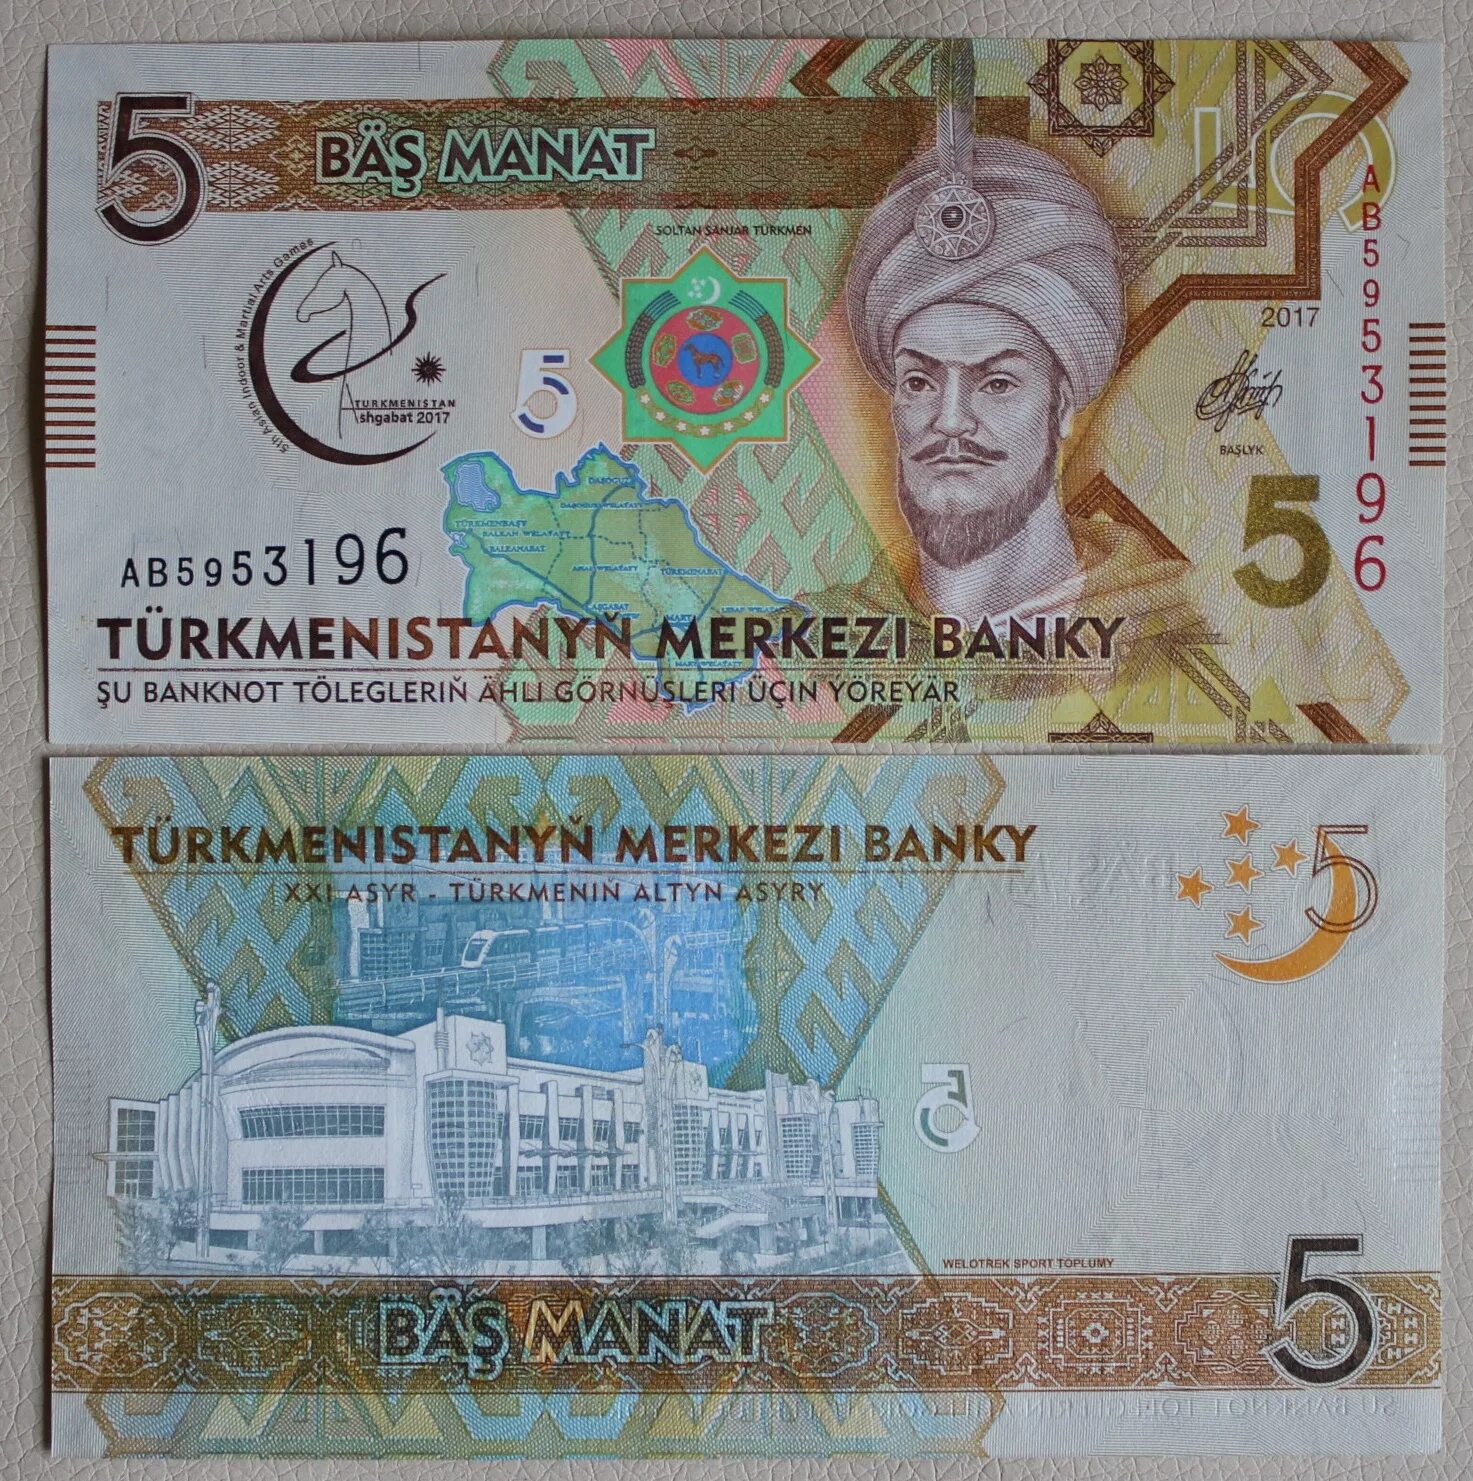 200 манат в рублях на сегодня. Банкноты Туркмении 5 манат. 1 Манат Туркменистан. Банкнота туркменский манат. Современные банкноты Туркменистана.